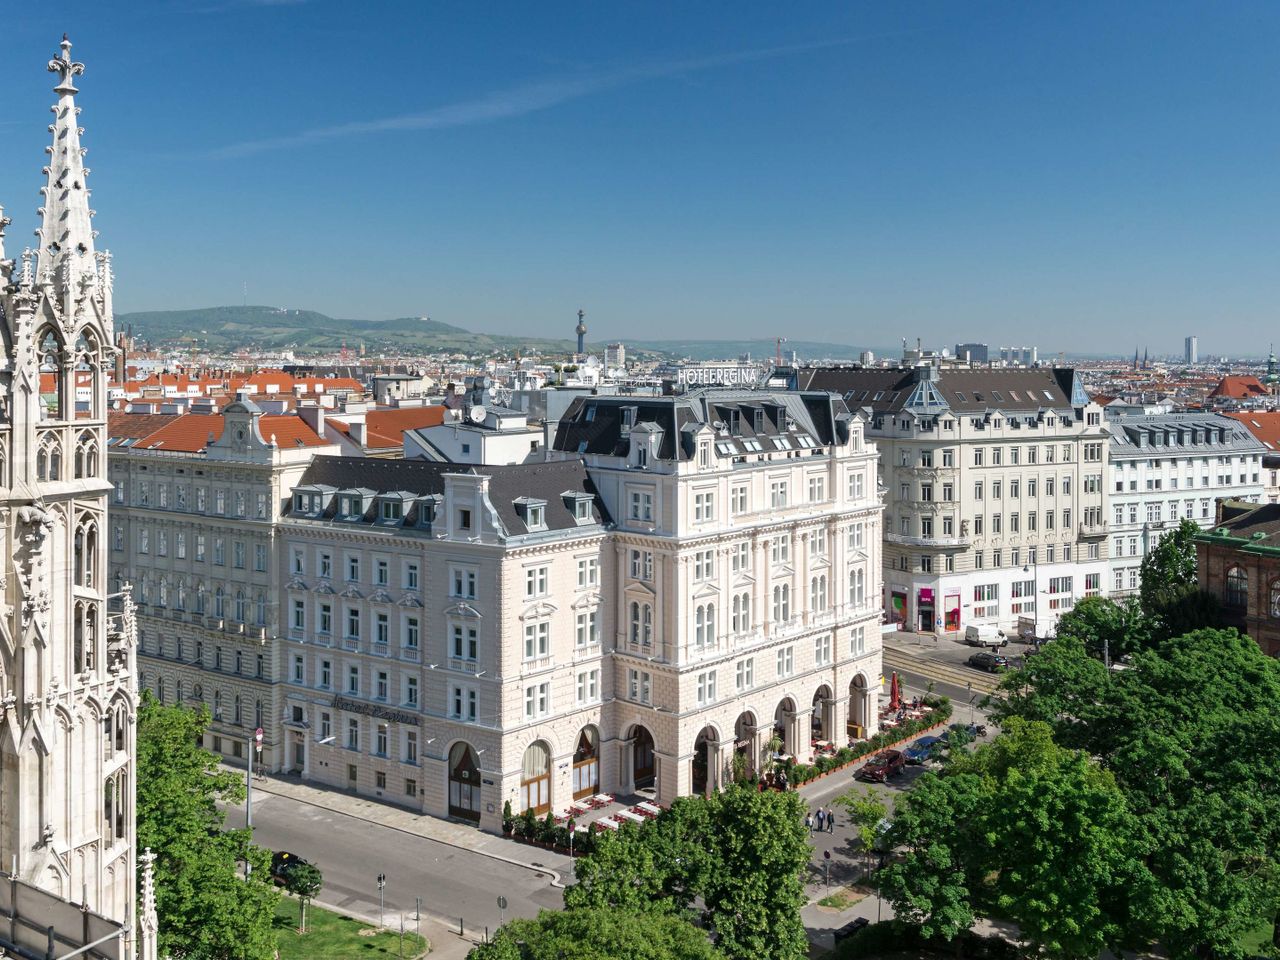 Das wunderschöne Wien erleben - 3 Tage